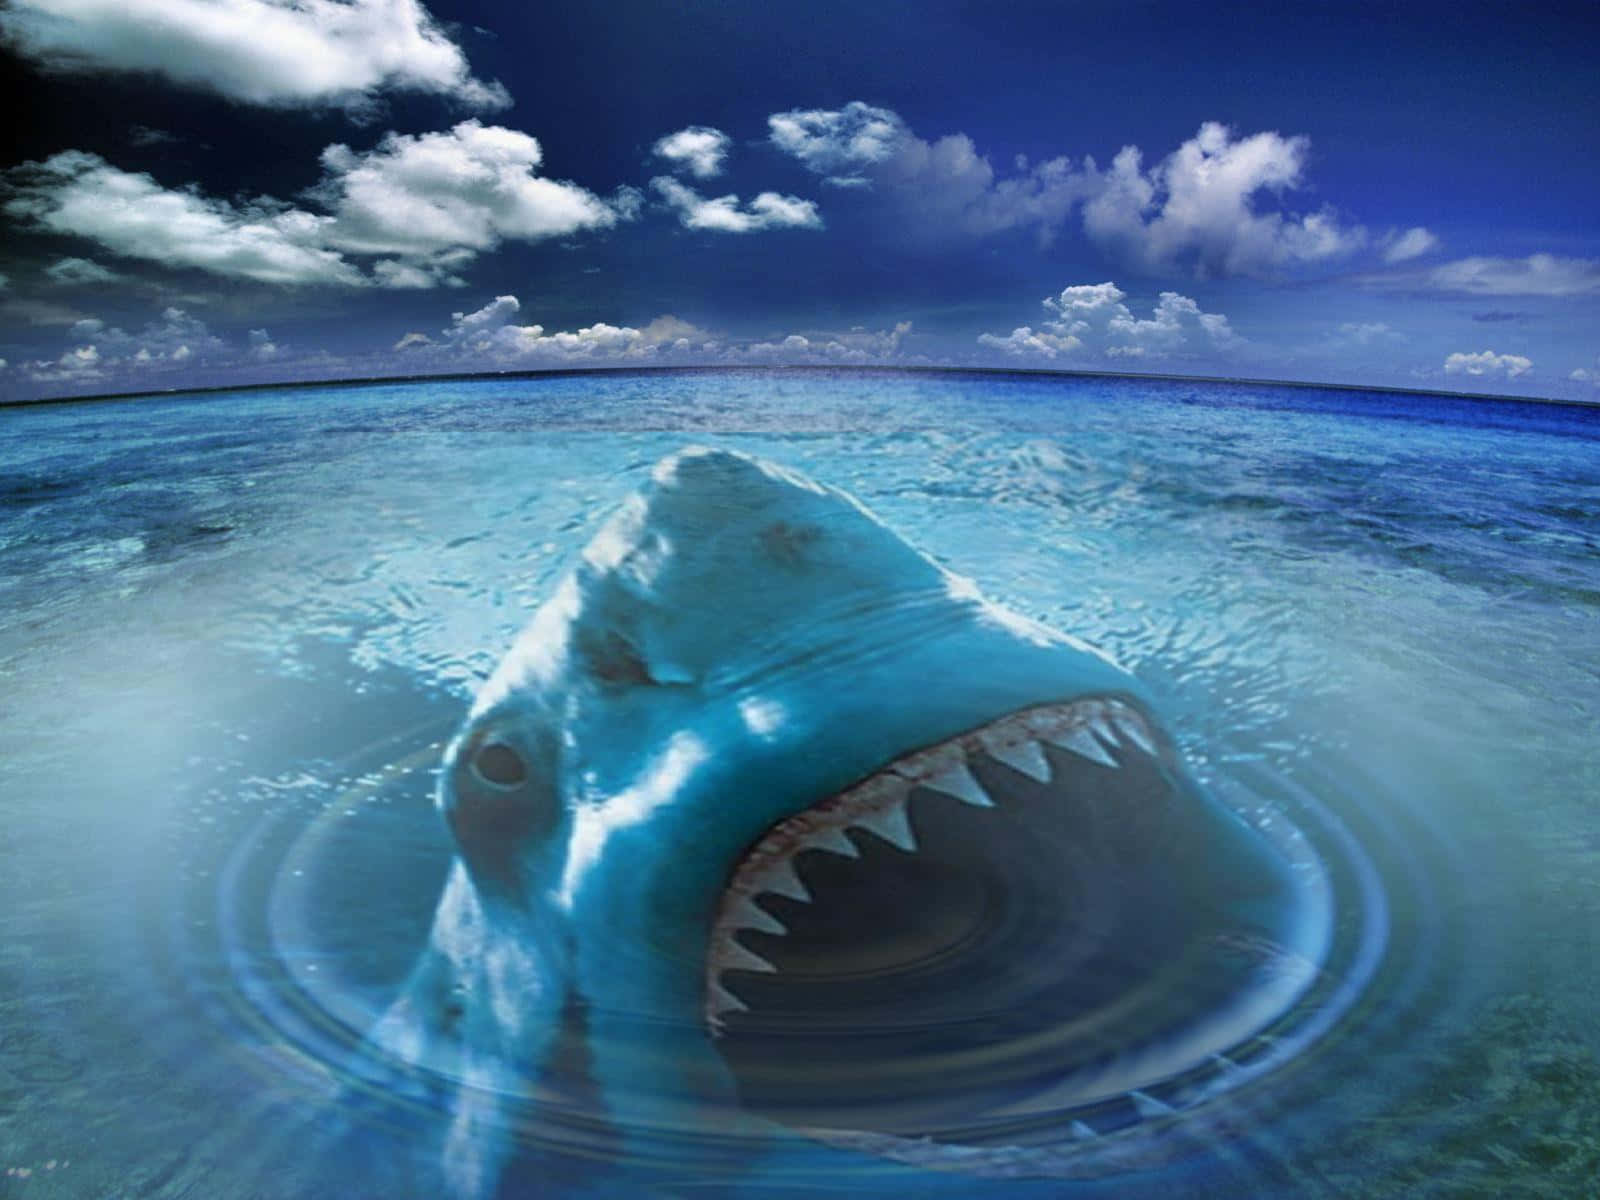 Taucheein In Den Ozean Und Steh Einem Hai Von Angesicht Zu Angesicht Gegenüber!